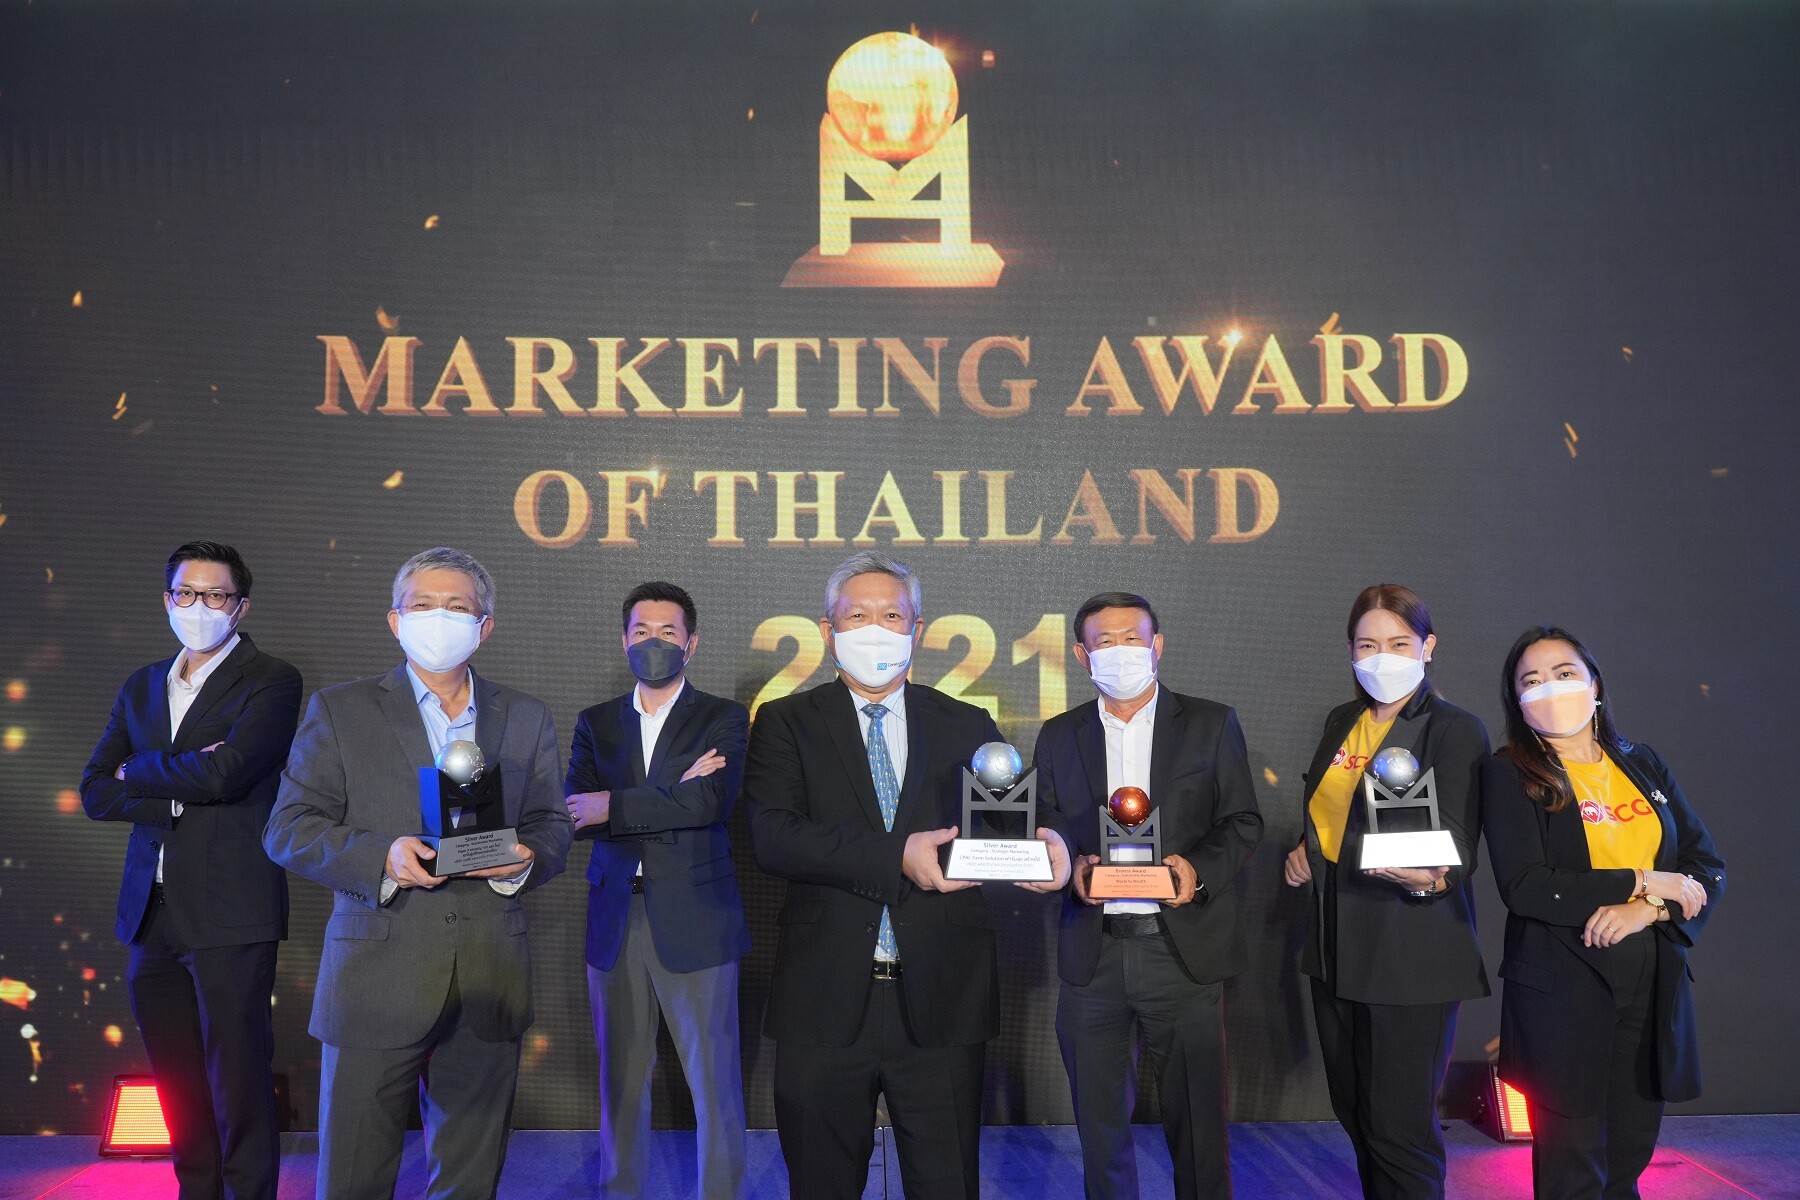 เอสซีจี รับ 4 รางวัล แคมเปญการตลาดแห่งปีจากเวที "Marketing Award of Thailand 2021" มุ่งขับเคลื่อนนวัตกรรมเพื่อความยั่งยืน ตอบโจทย์ความต้องการของลูกค้า